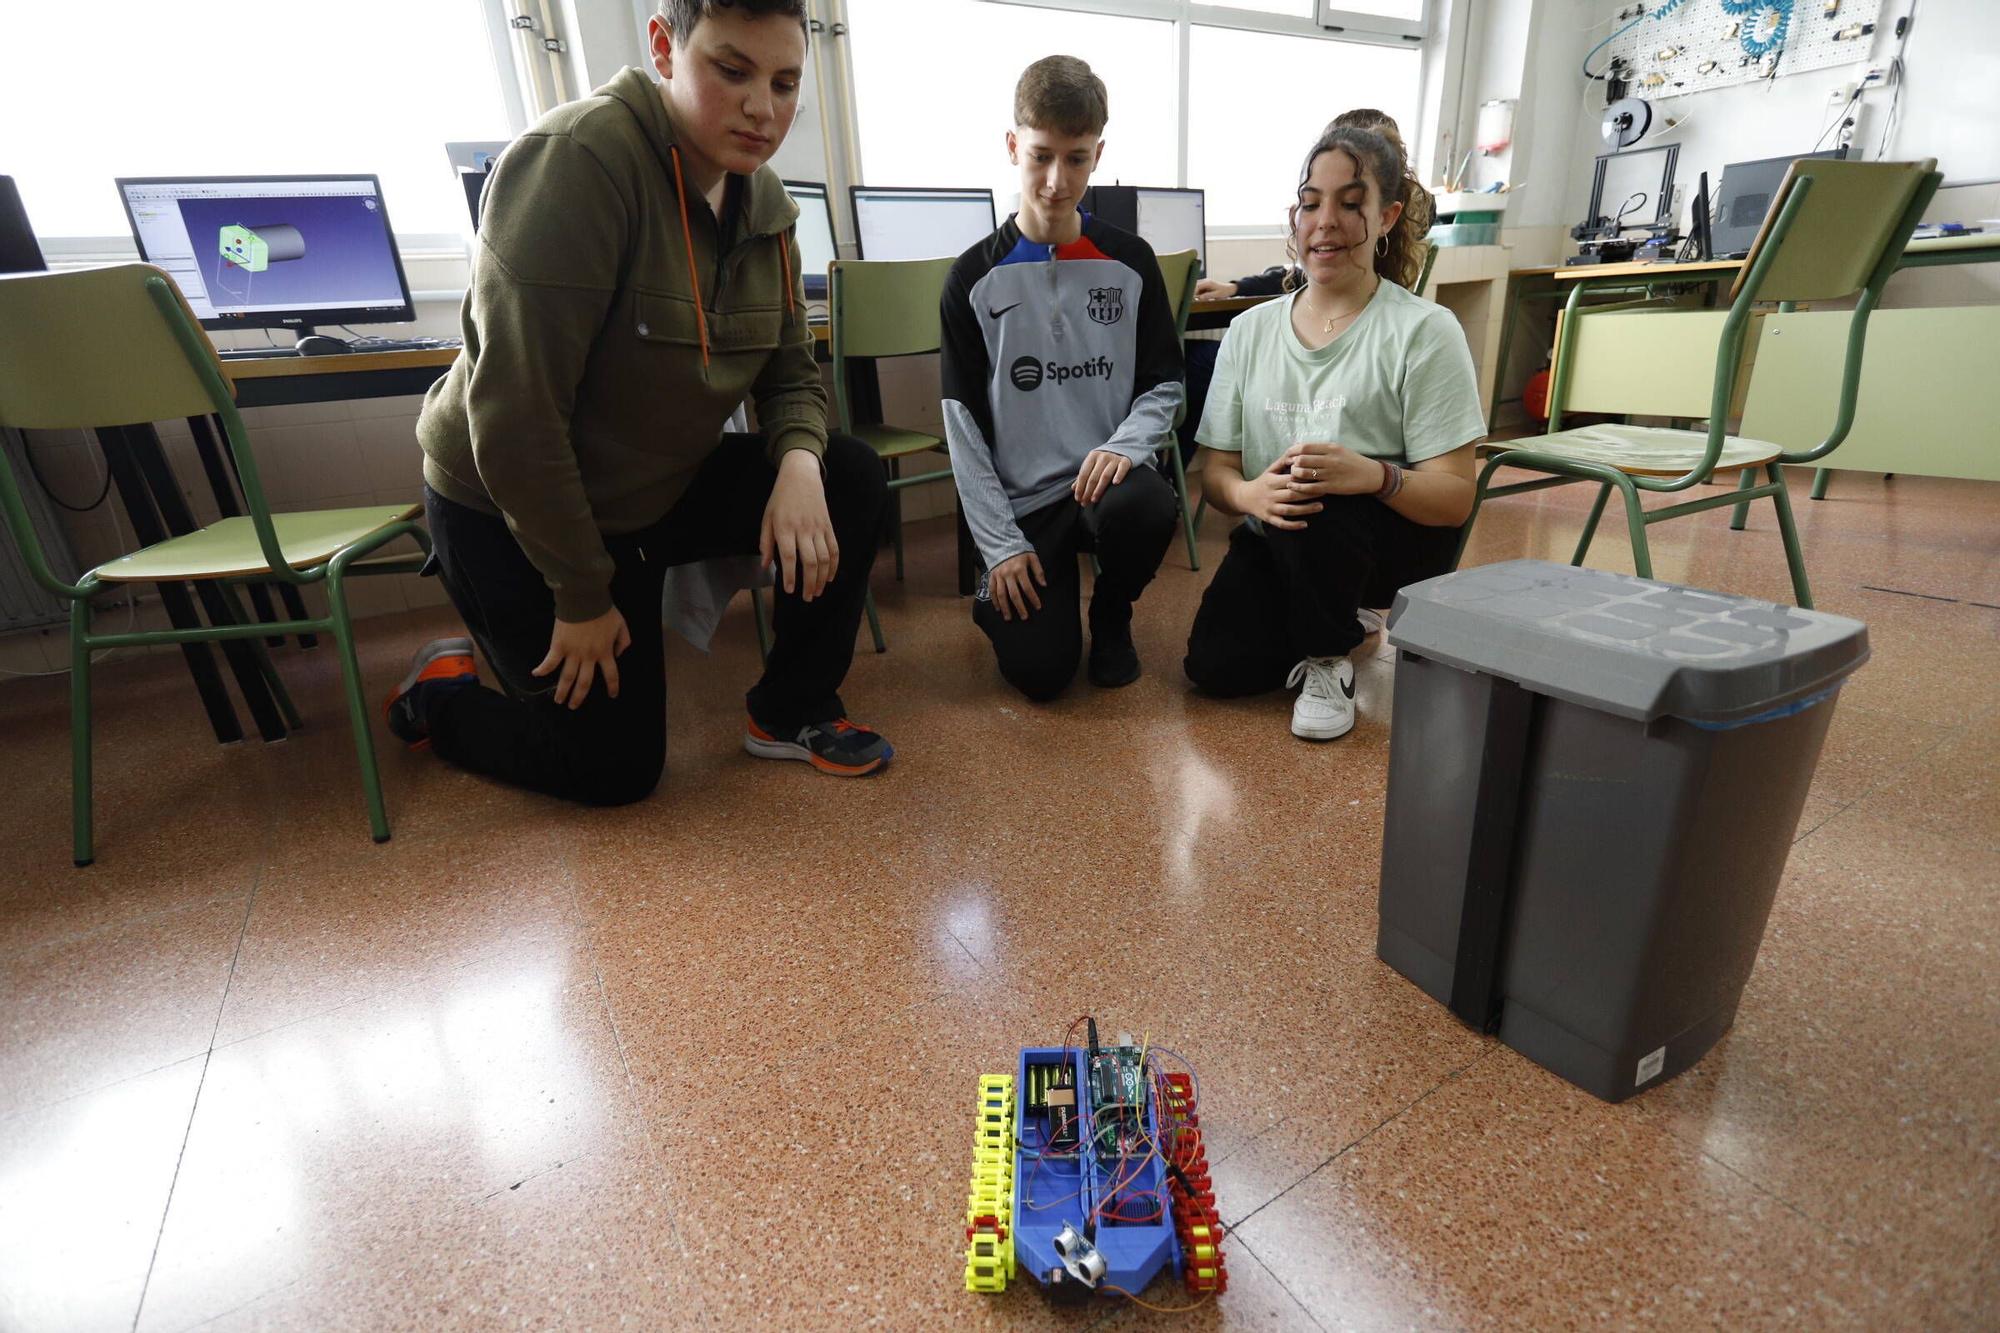 De aula en aula: el IES Padre Feijoo, una apuesta firme por la robótica (en imágenes)